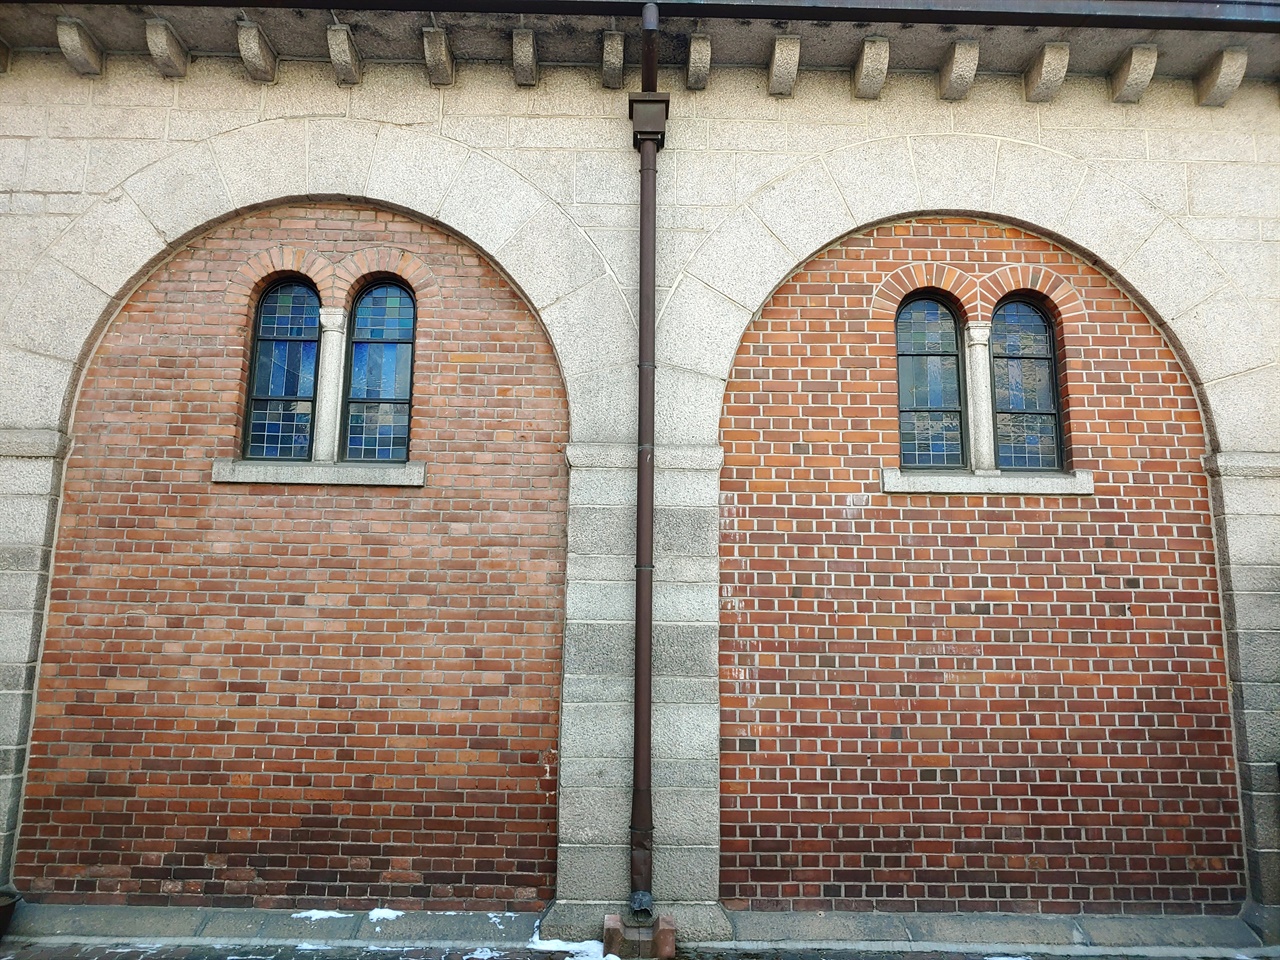 신랑(神廊) 두번째와 세번째 아치창 모습임. 왼쪽과 오른 쪽 벽돌 색이 다르고, 벽돌 간 하얀 줄 색도 다름을 확인할 수 있음.